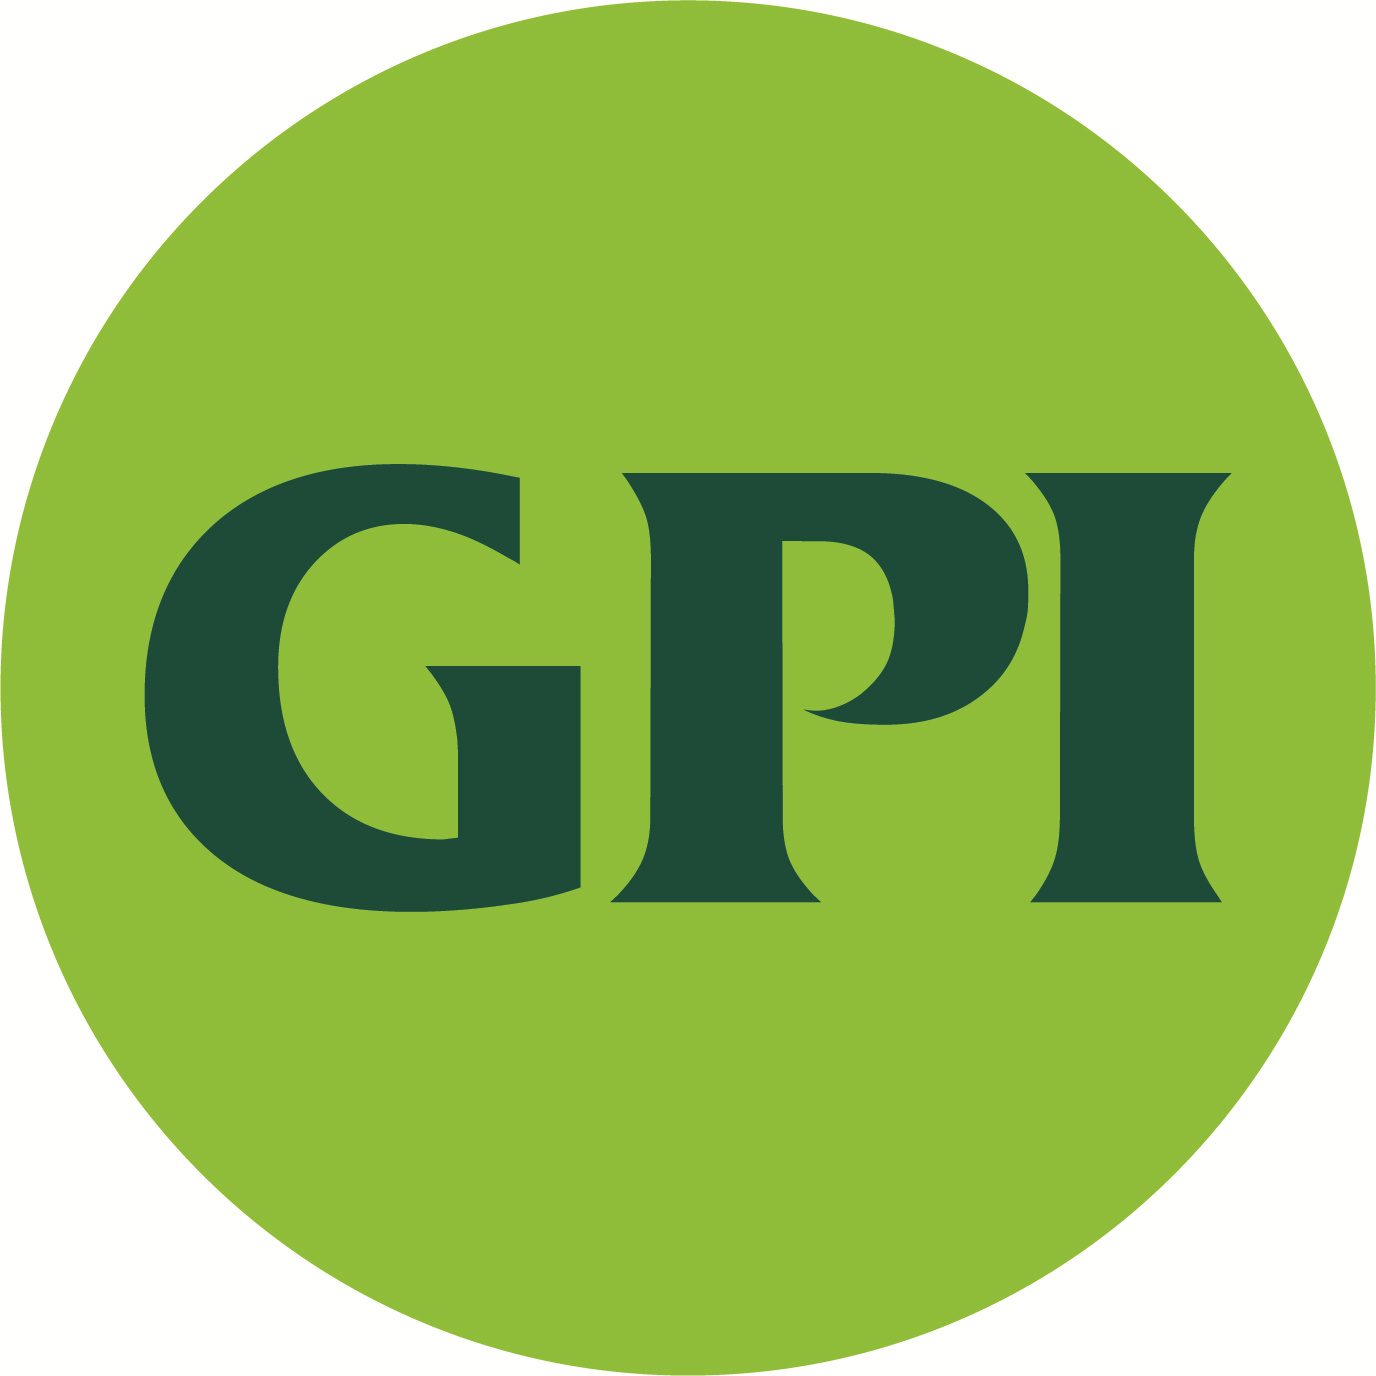 GPI | Greenman-Pedersen, Inc logo